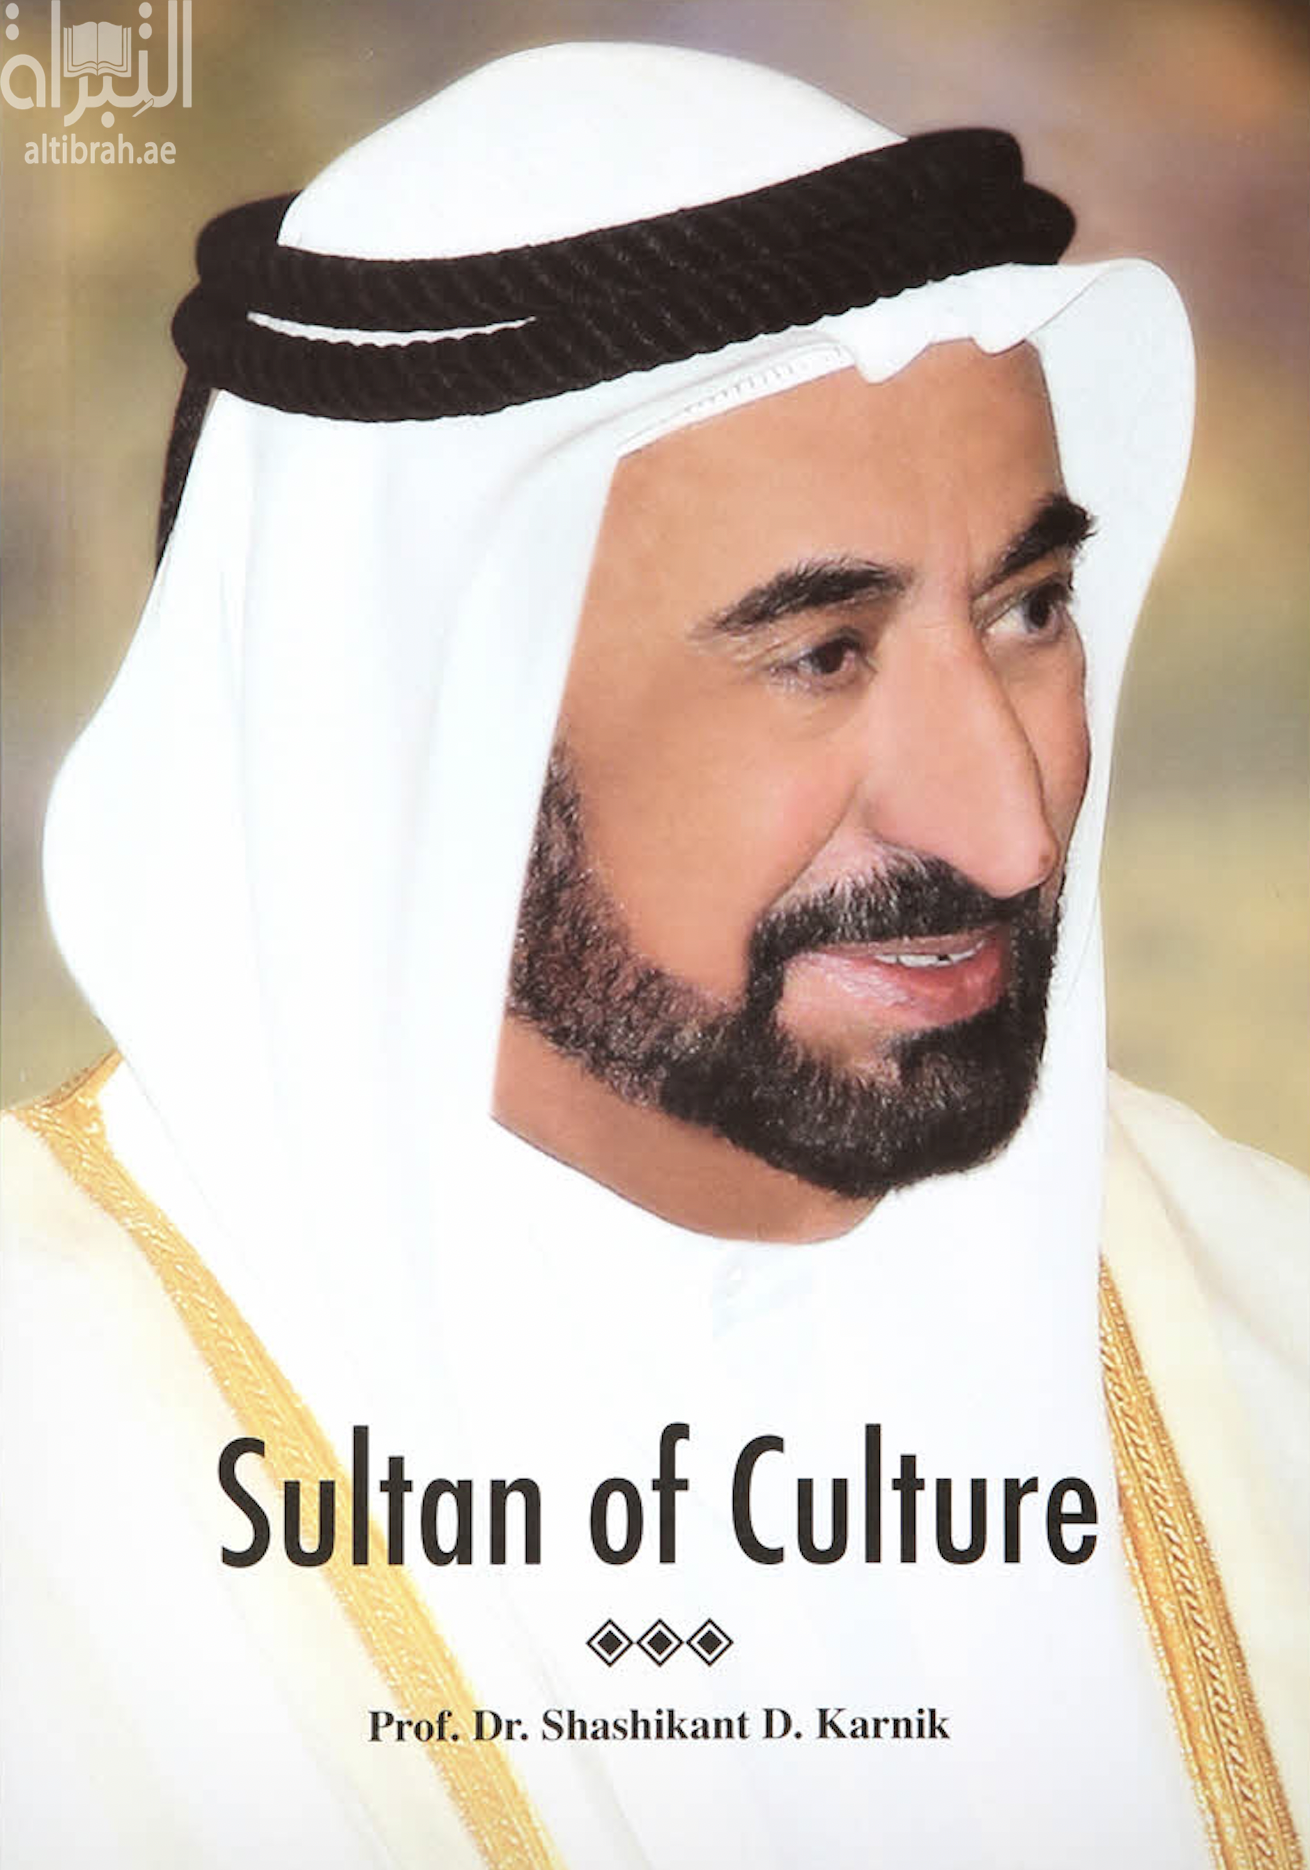 Sultan of culture